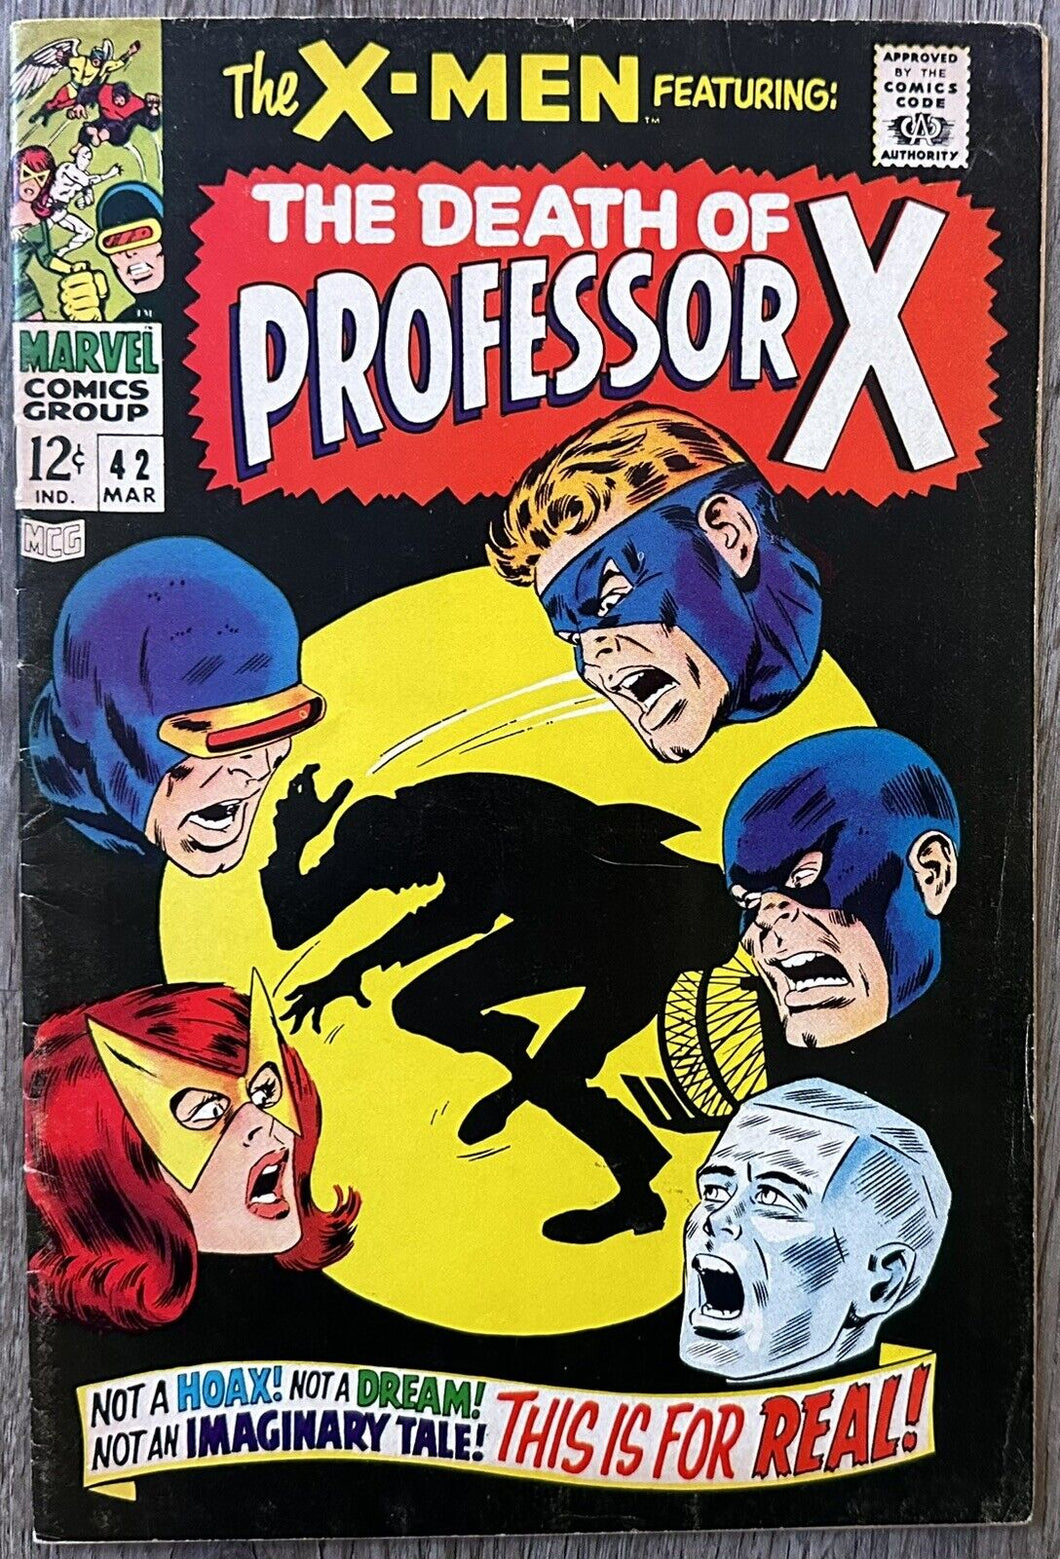 X-MEN #42 (MARVEL,1968) 